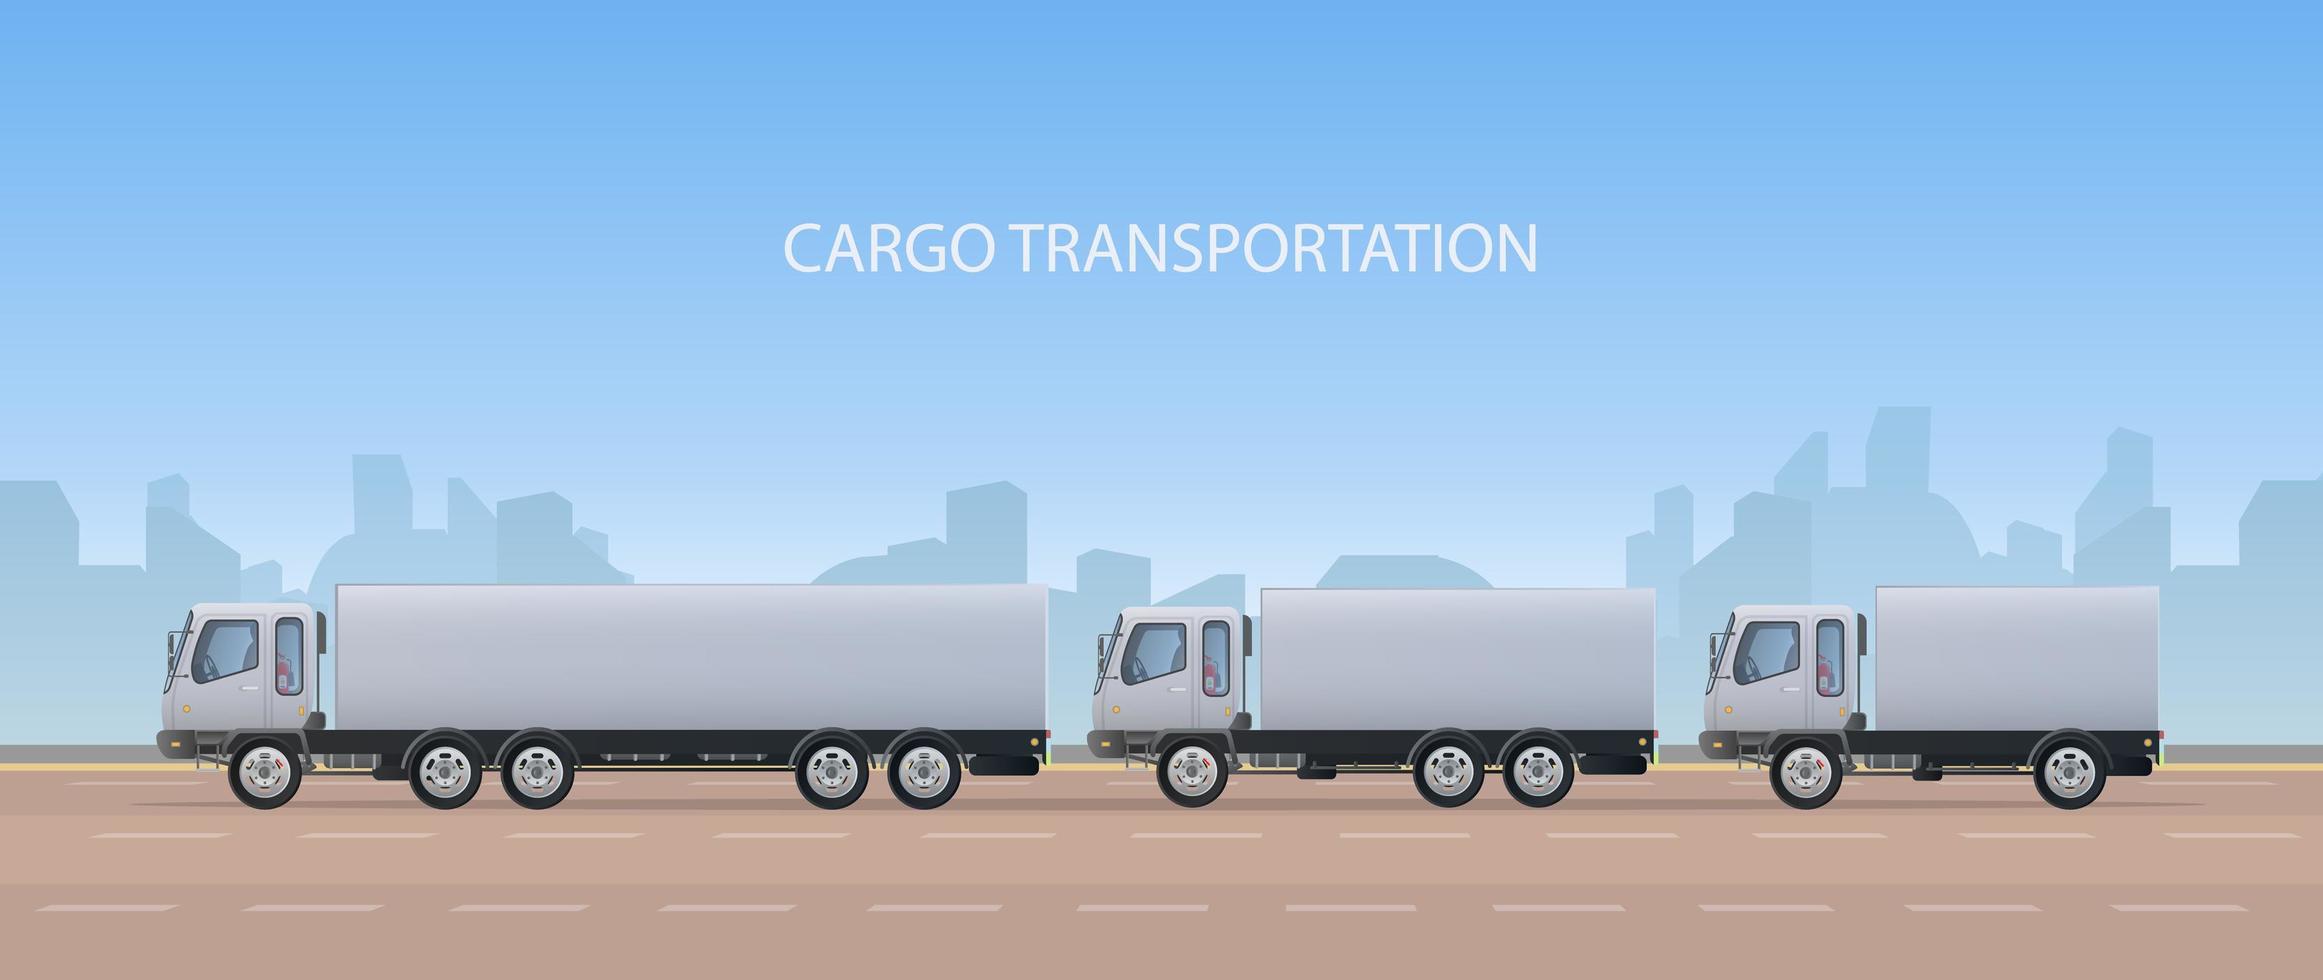 bannière de fret. gros camion blanc. le concept de transport, de livraison et de logistique des marchandises. vecteur. vecteur